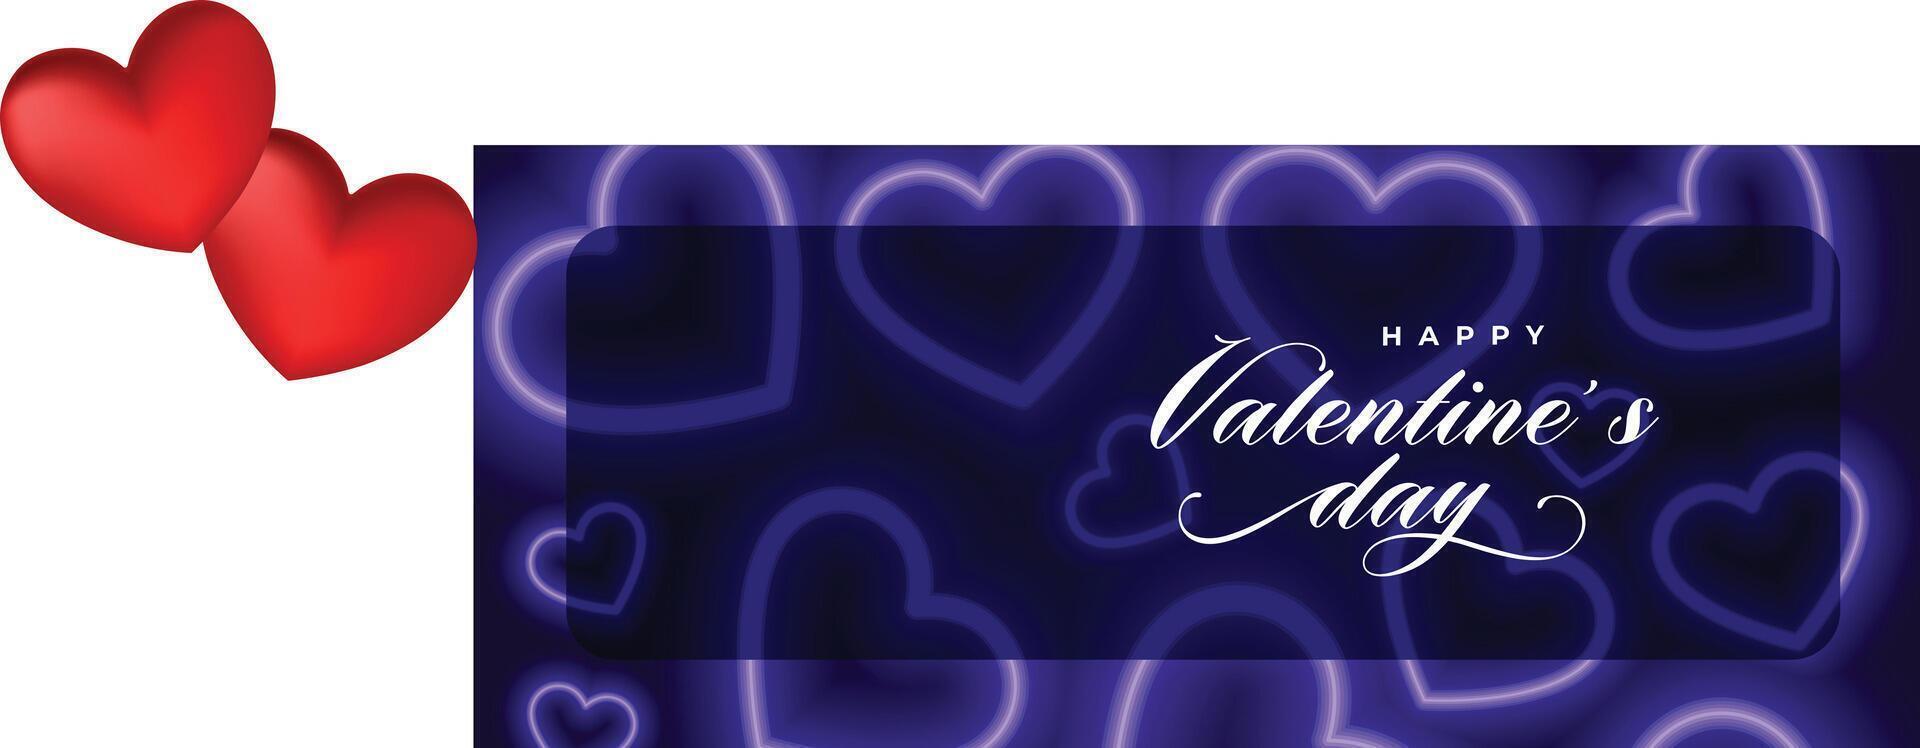 decoratief valentijnsdag dag viering banier met 3d liefde harten vector